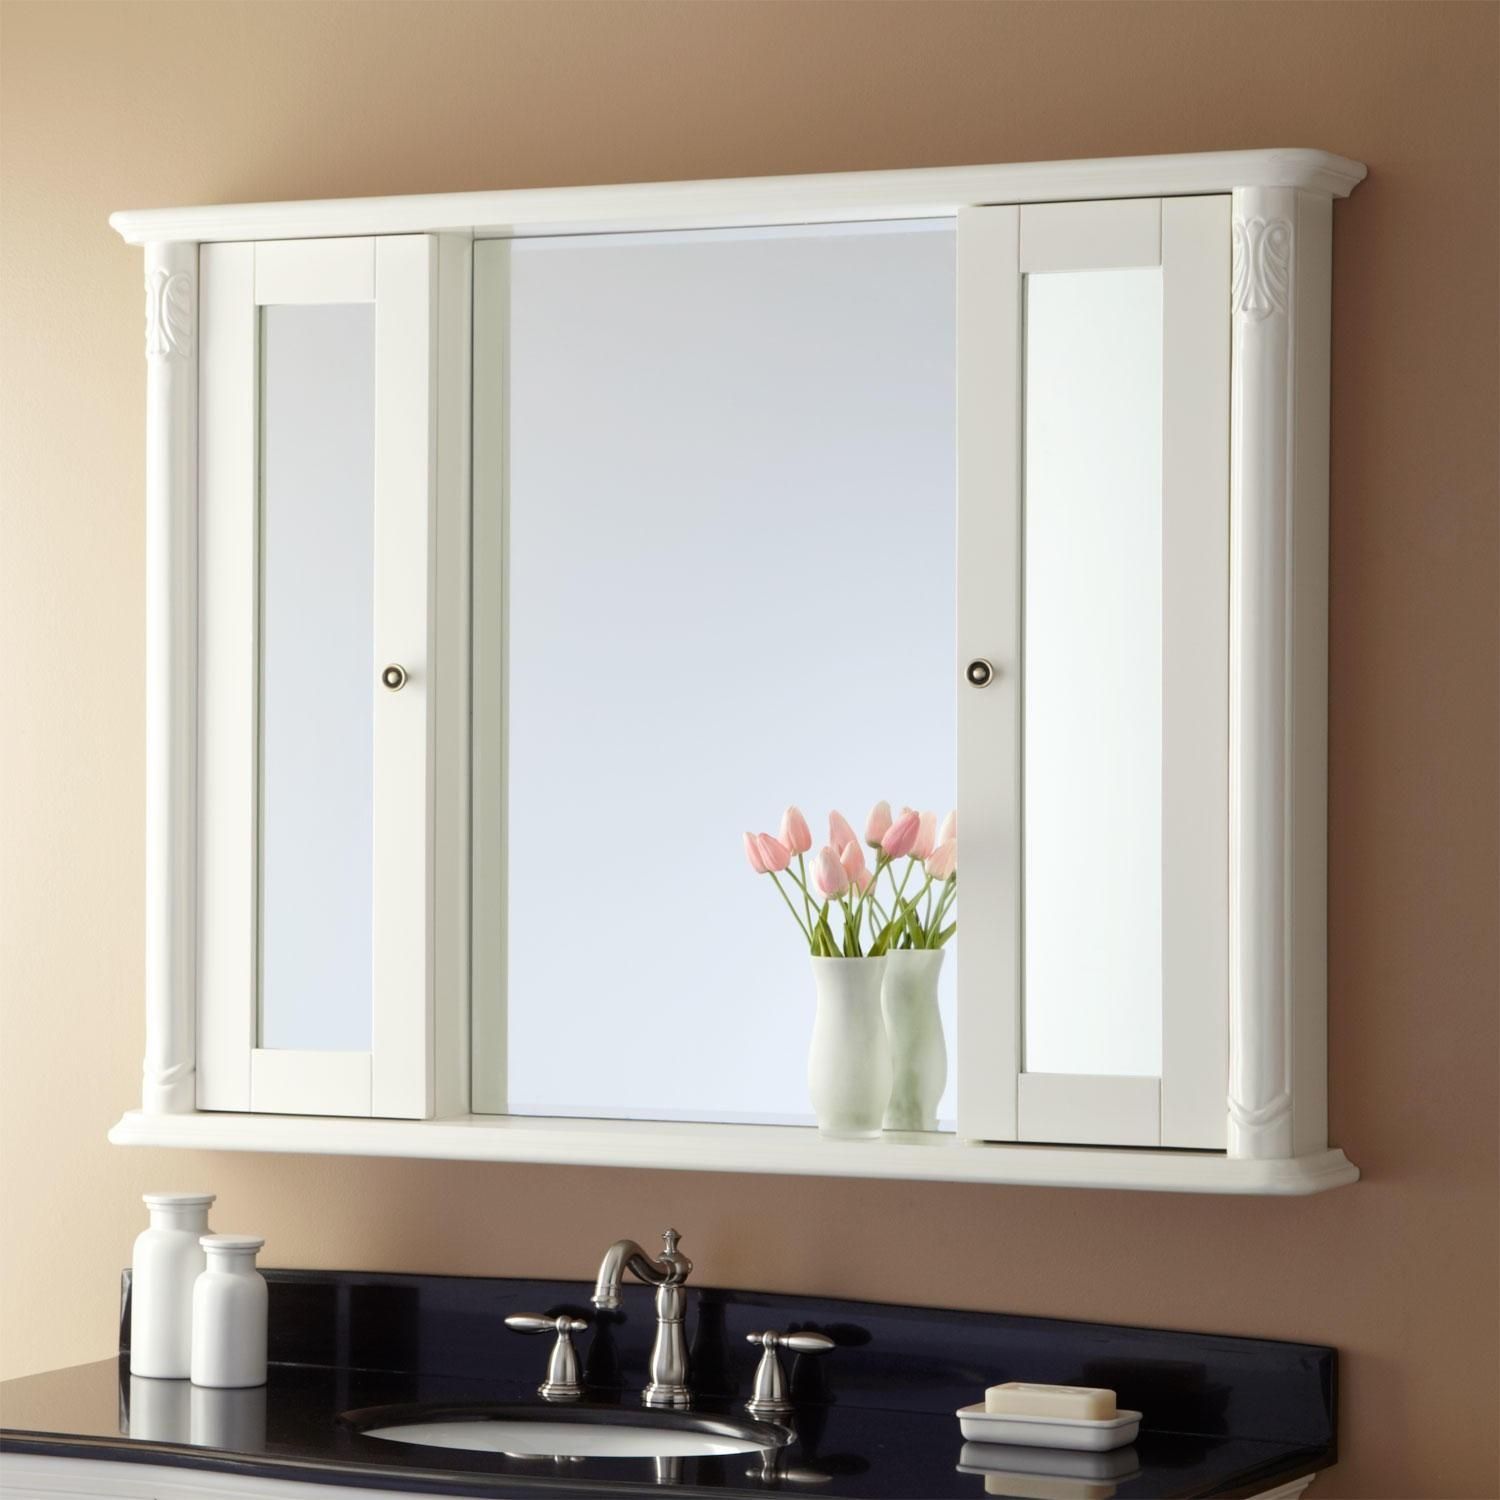 20 Photos Bathroom Vanity Mirrors With Medicine Cabinet ...